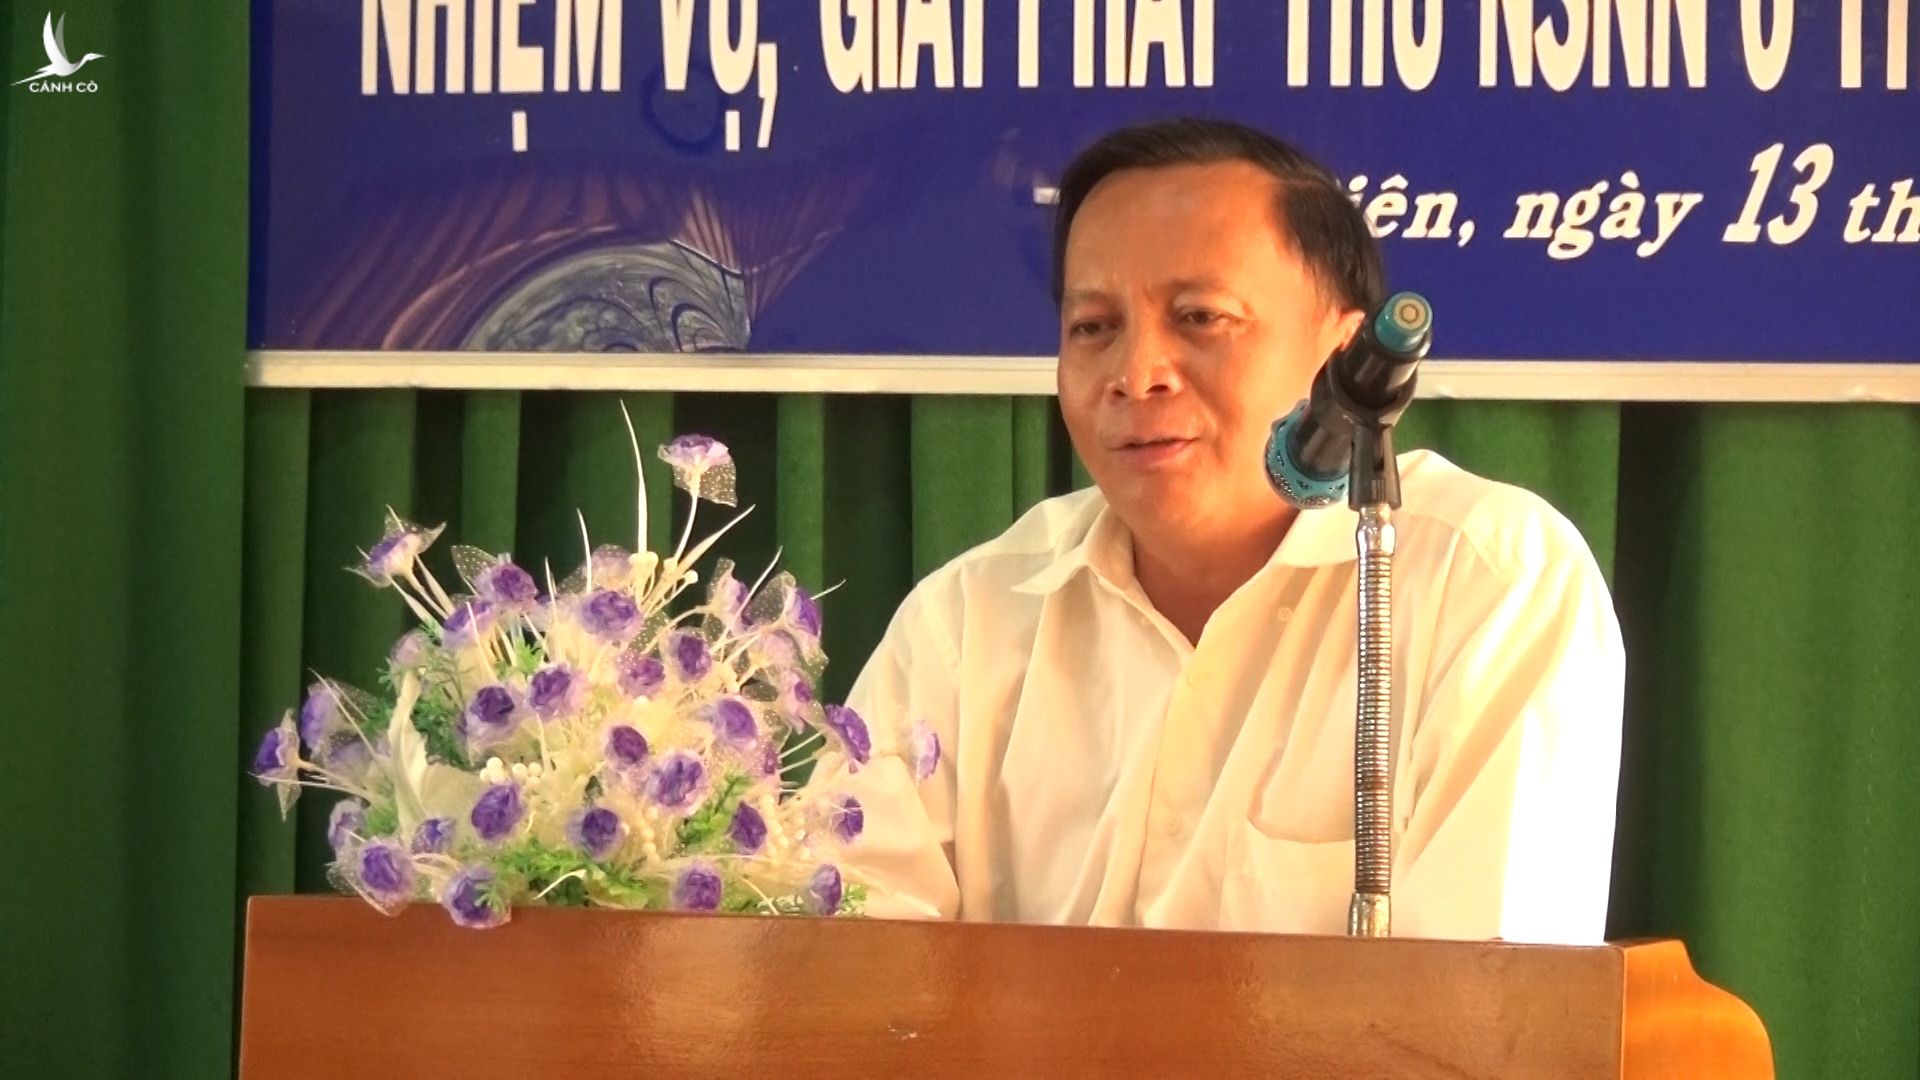 An Giang: Phó chủ tịch huyện Tịnh Biên ăn nhậu lúc giãn cách bị kỷ luật